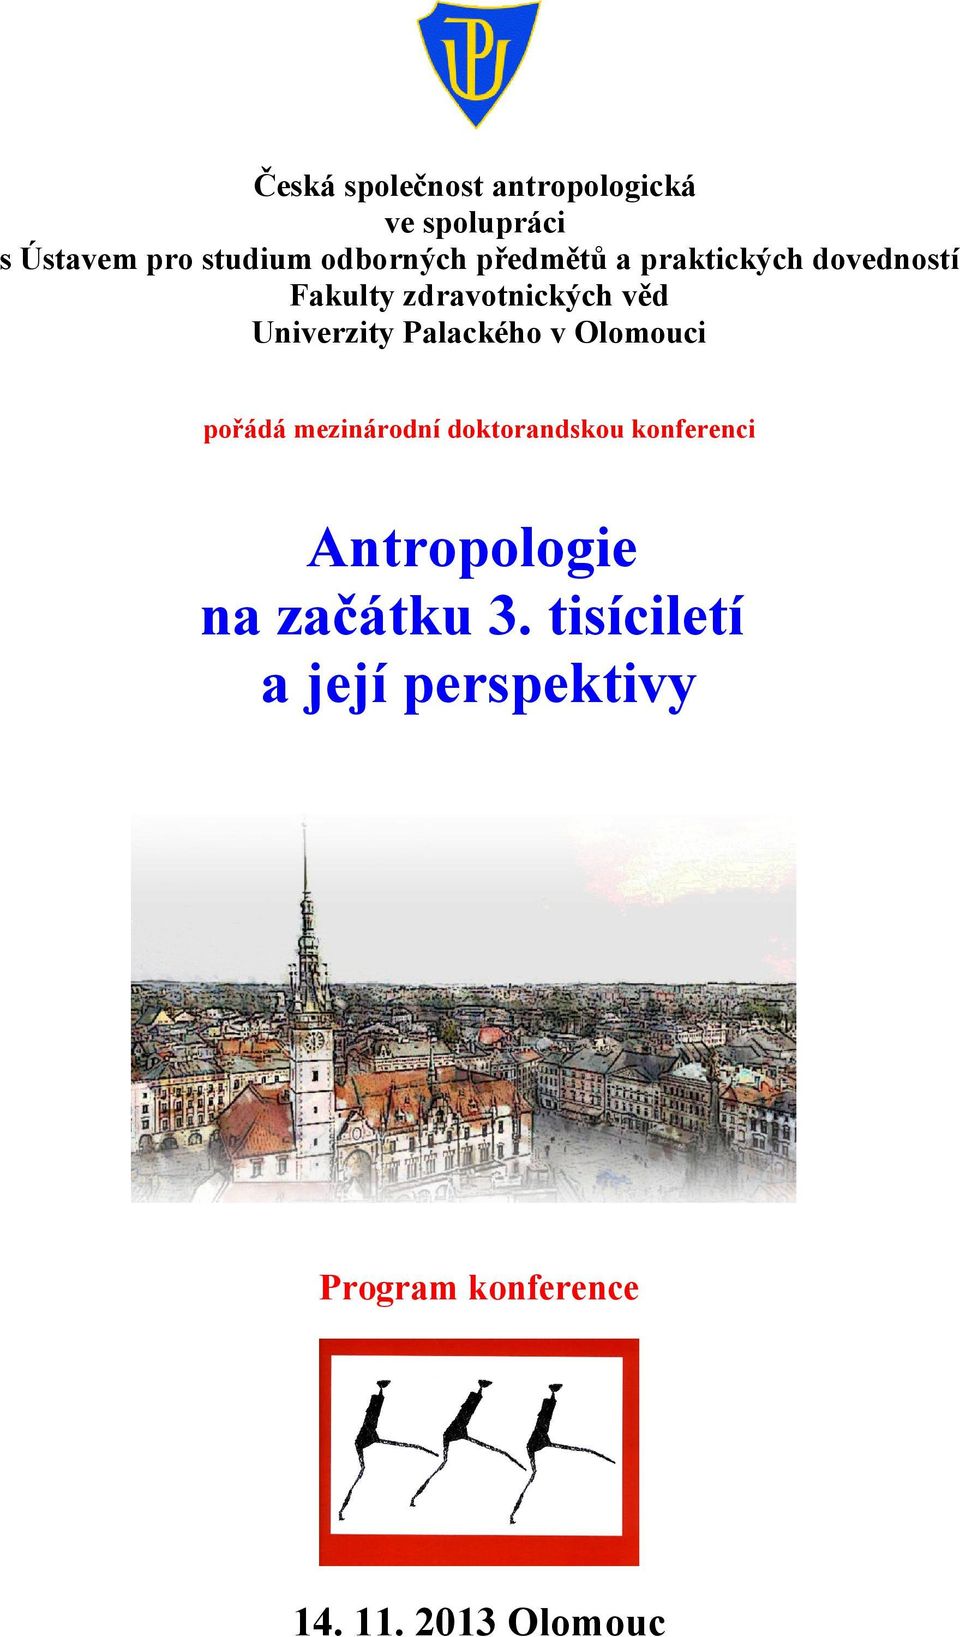 Palackého v Olomouci pořádá mezinárodní doktorandskou konferenci Antropologie